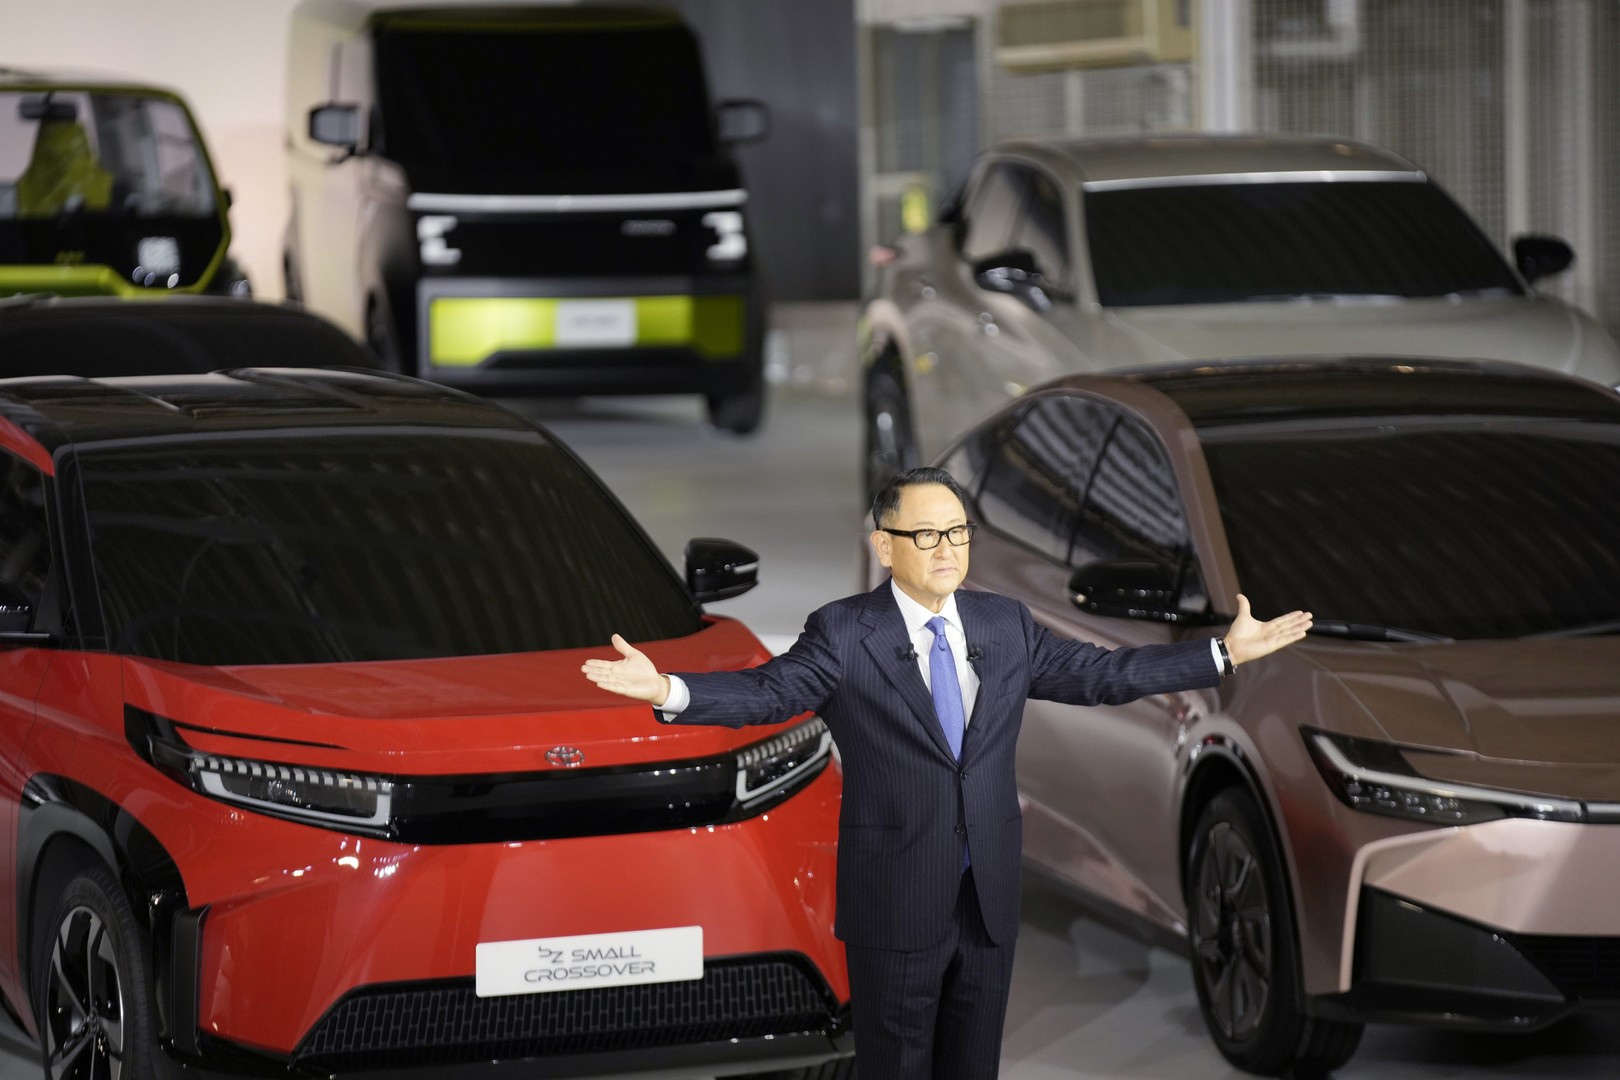 lt platformot használunk az akkumulátoros elektromos autóink számára, hogy a globális piac különböző igényeinek eleget tegyünk" - mondta Akio Toyoda.